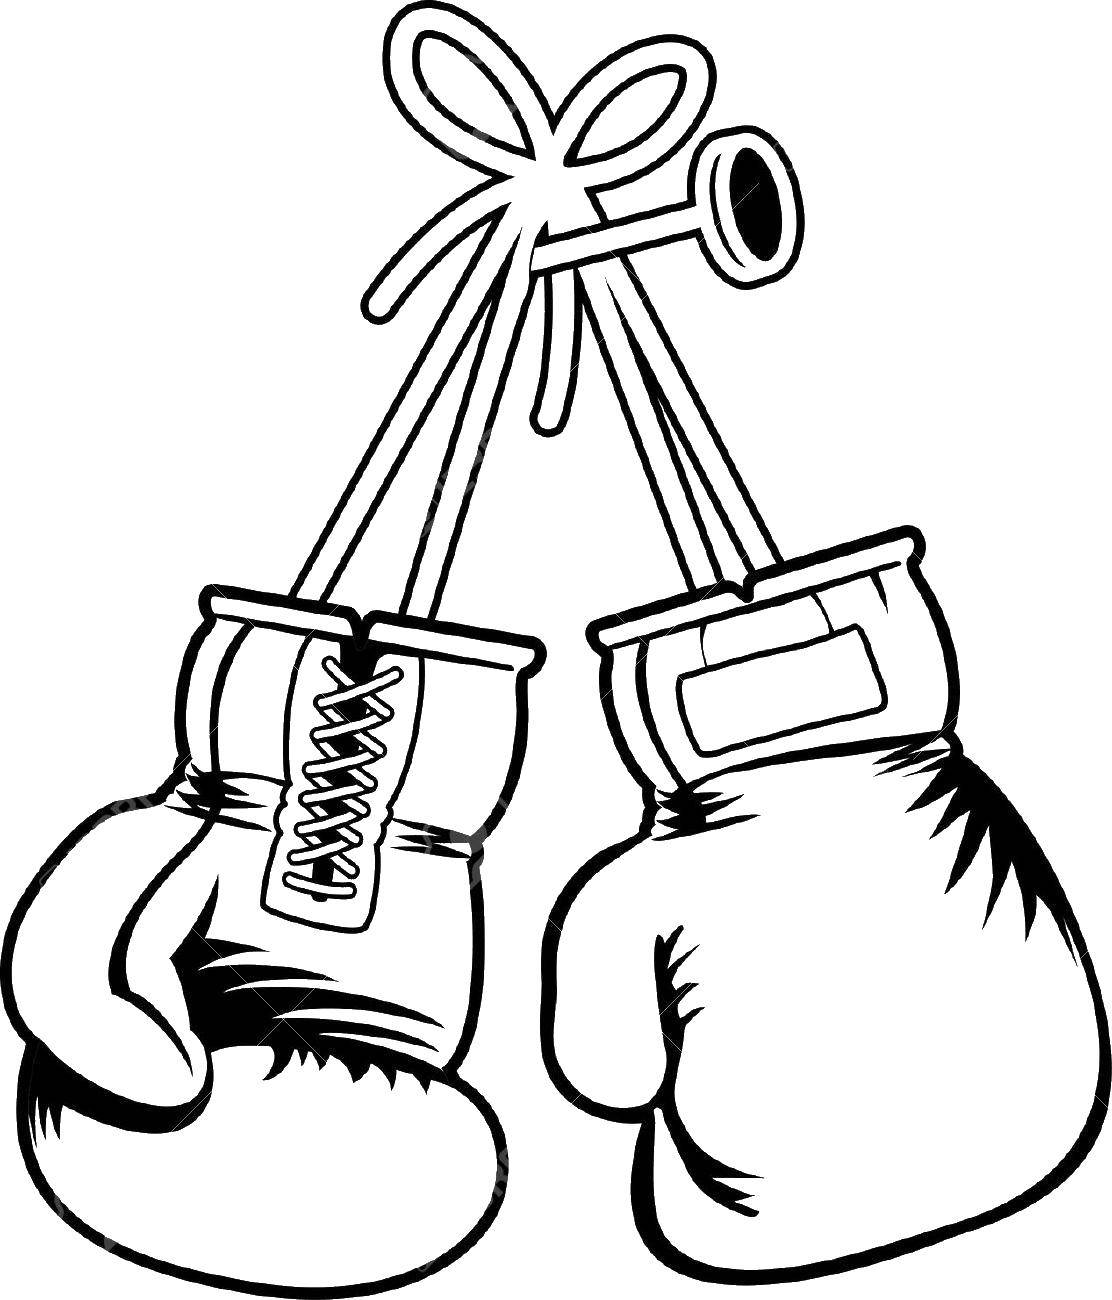 Раскраска бокс перчаток для детей (бокс, перчатки, изображения)